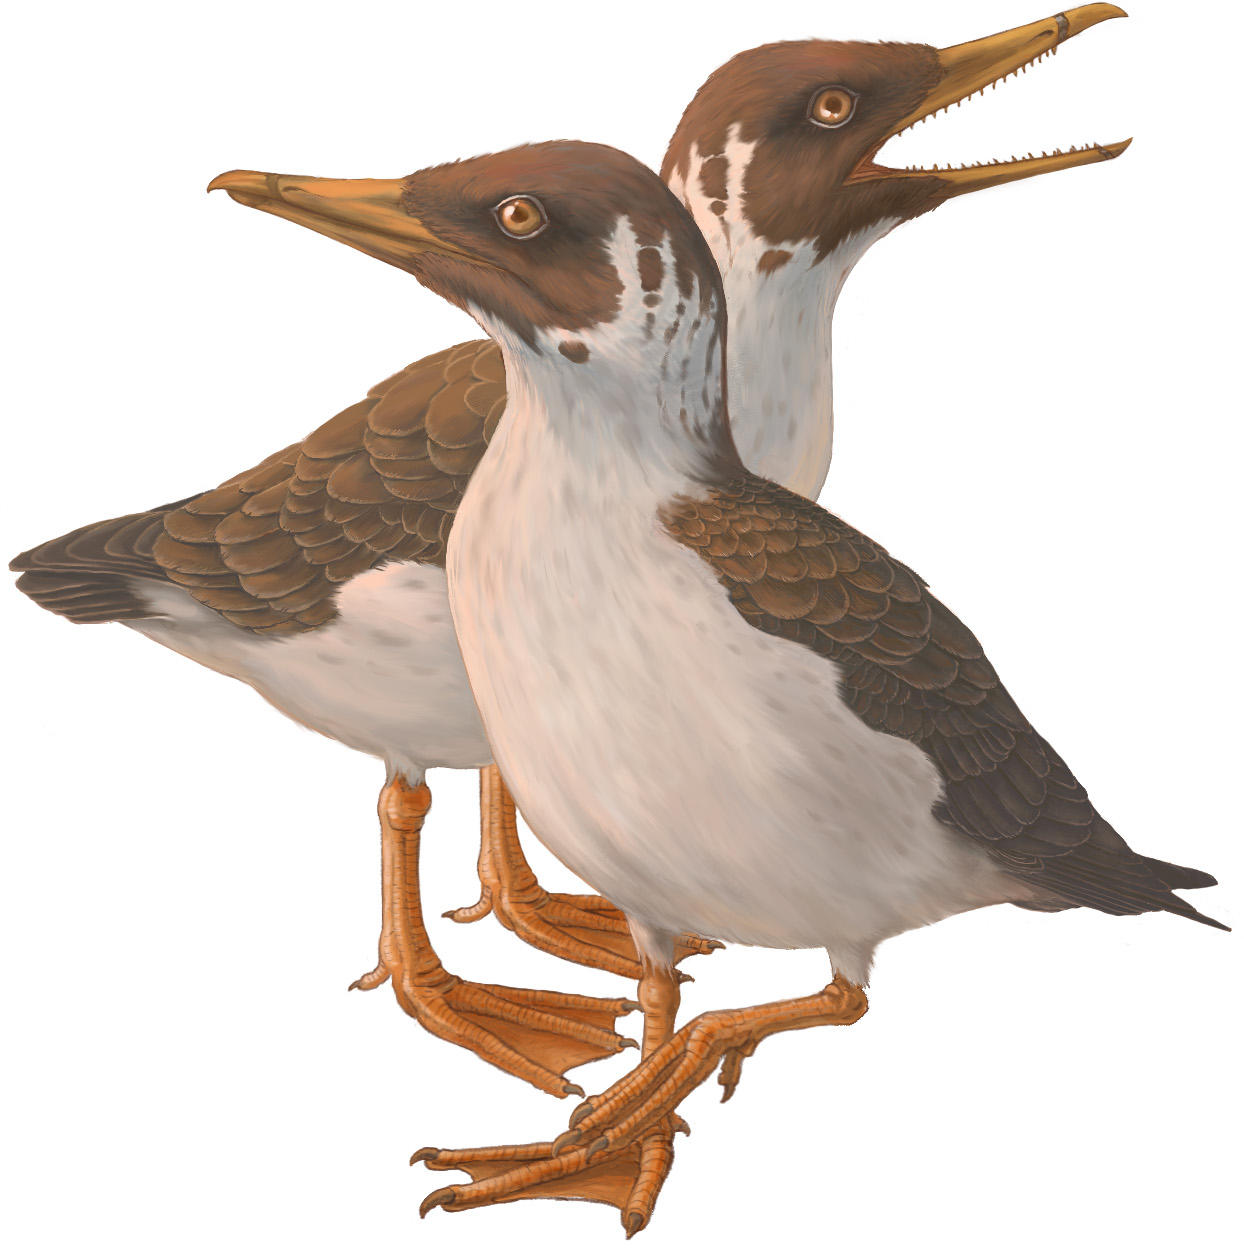 向后进化 的发现颠覆了人们对现代鸟类起源的一个多世纪的认识